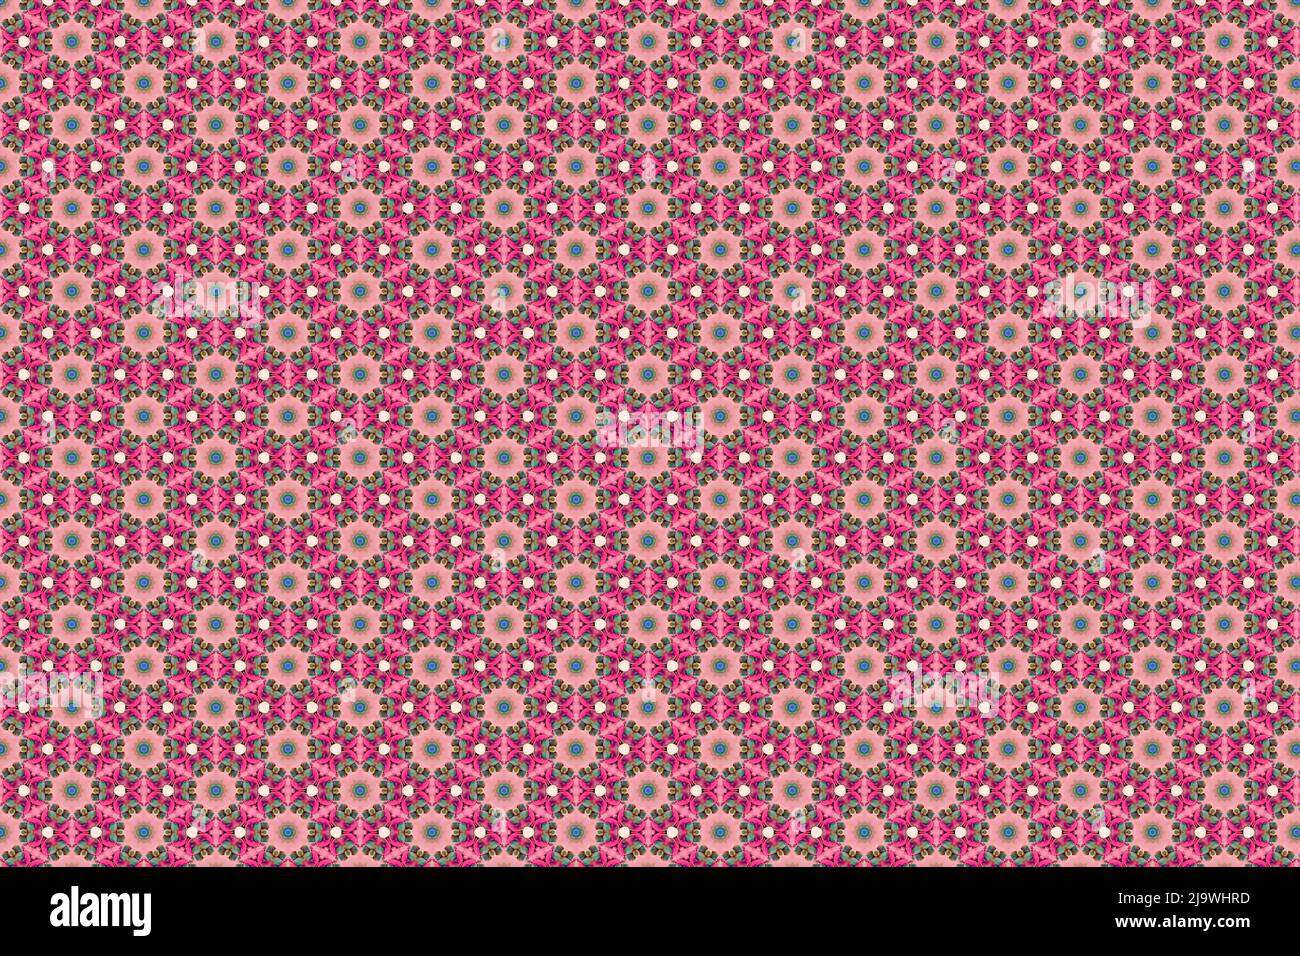 Farbenfrohe abstrakte Muster, die wie Blumen aussieht, erstellt aus einer Makrofotografie von Flüssigkeiten Blasen. Stockfoto